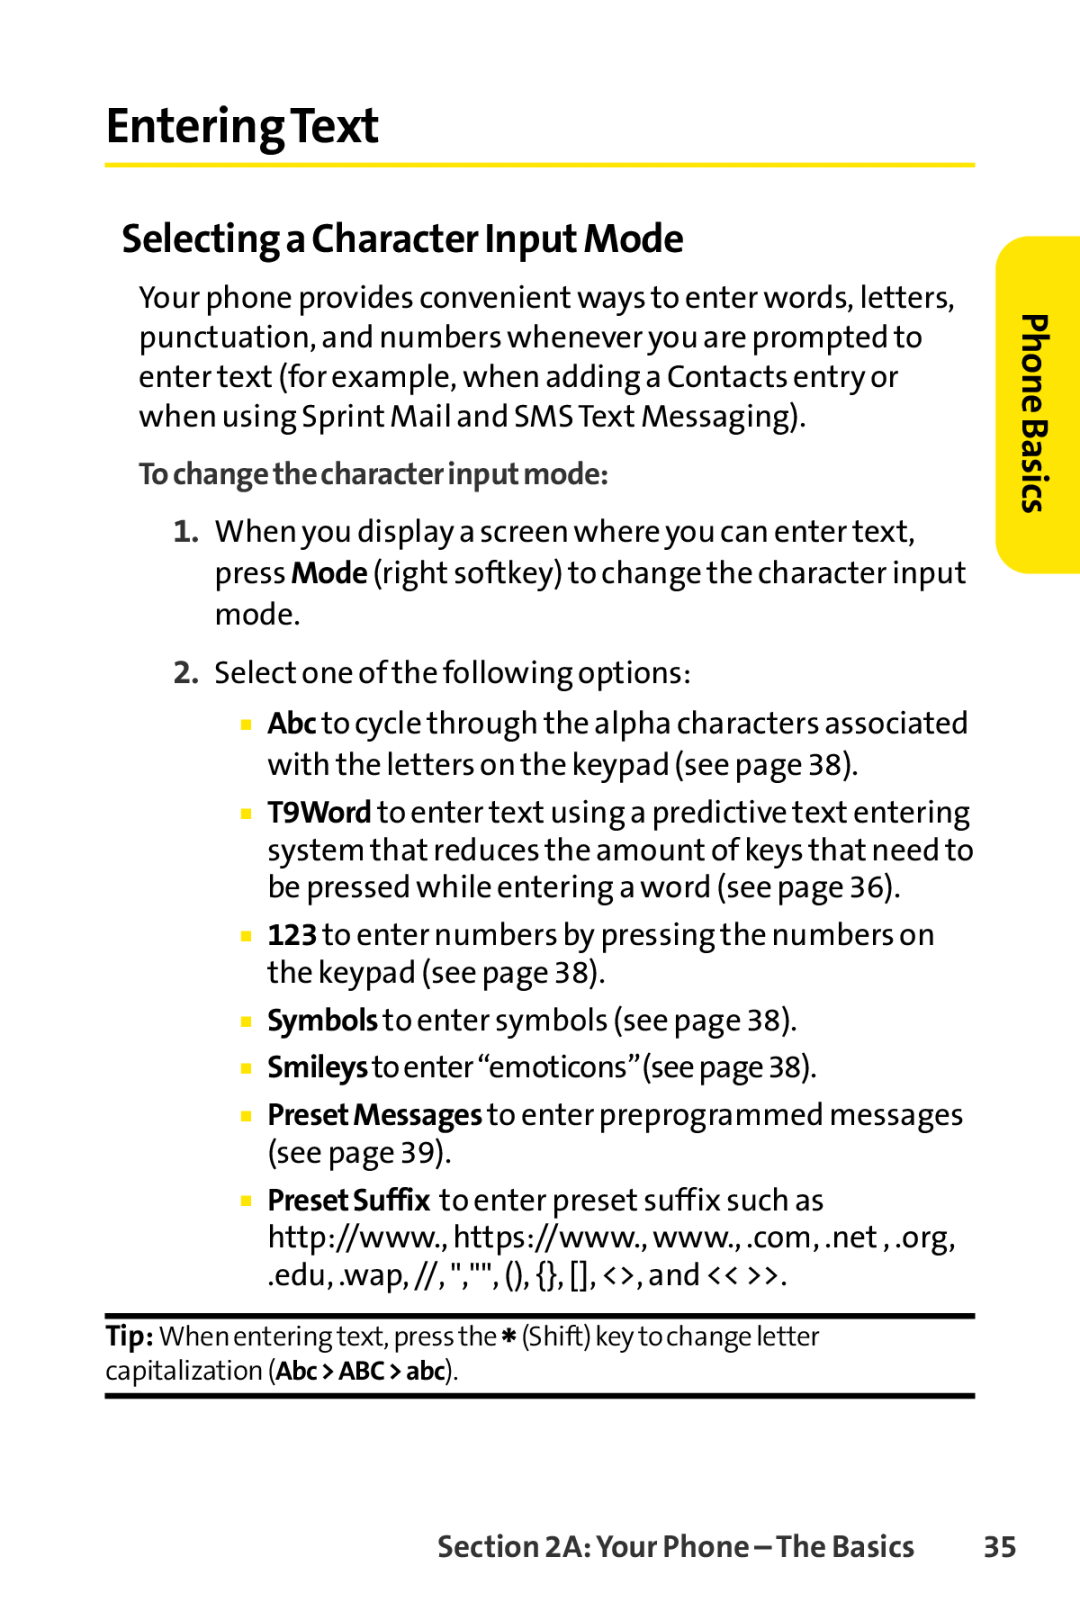 Sprint Nextel LX160 manual EnteringText, Selectinga Character InputMode, Tochangethecharacterinputmode, Phone Basics 